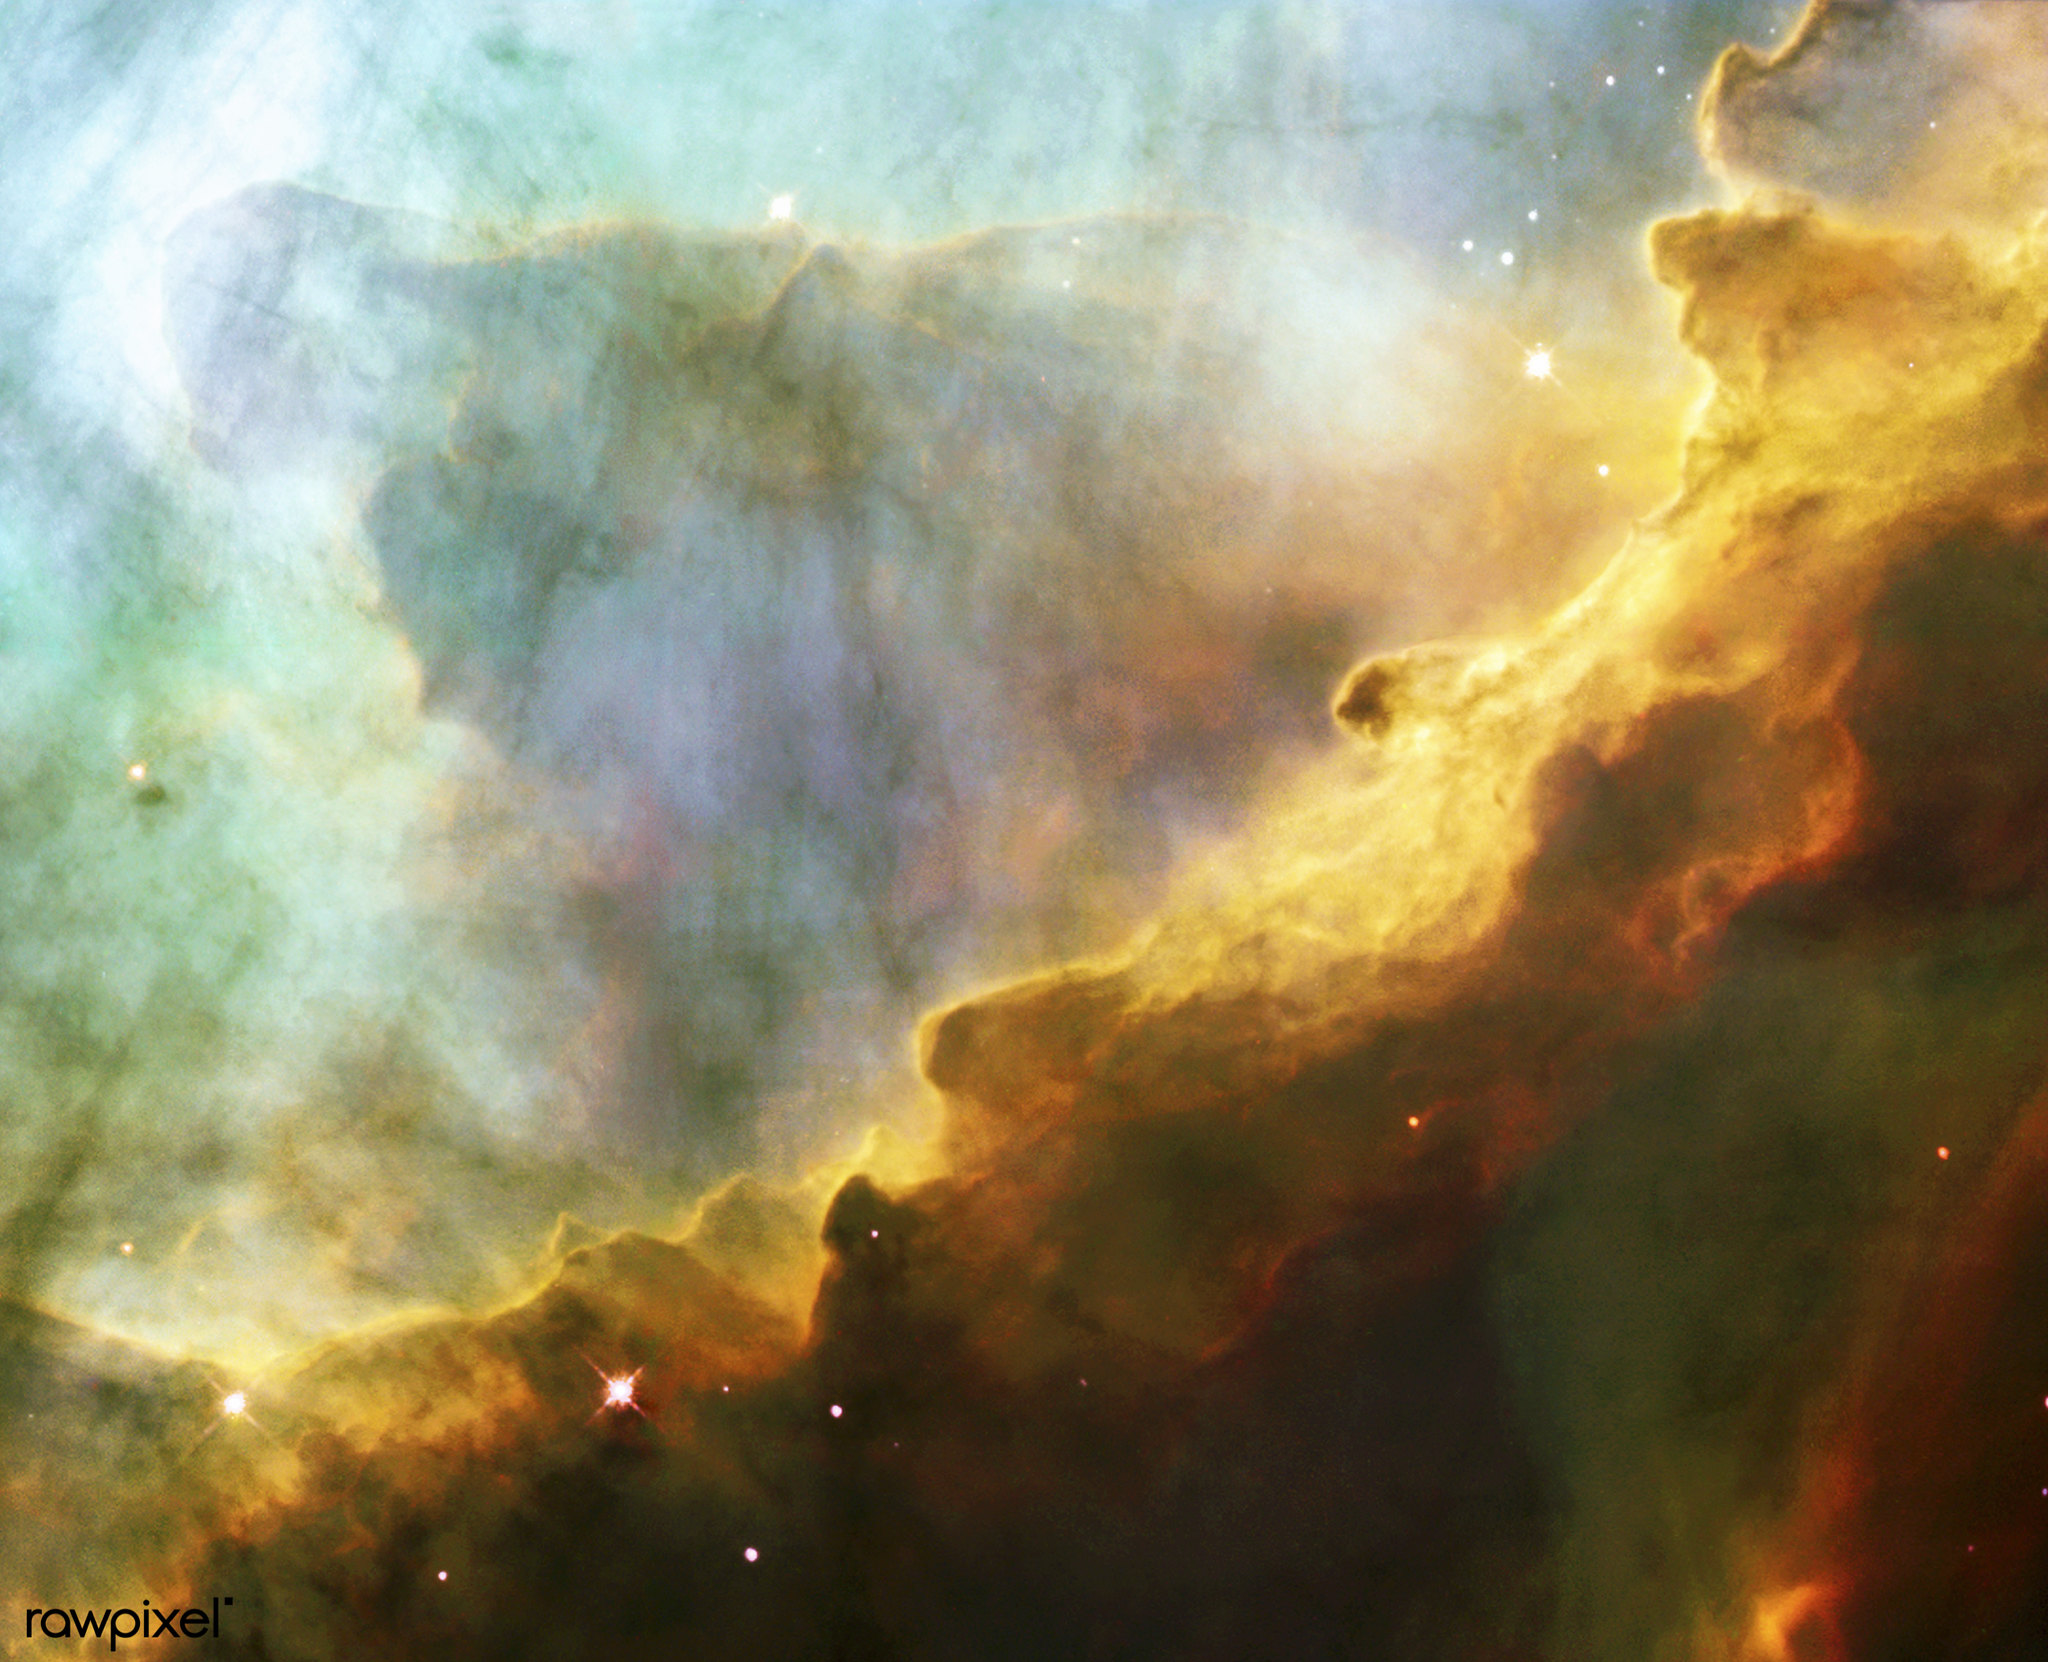 Туманность M17 (Омега) находится в созвездии Стрельца, на расстоянии 5500 световых лет. Клочковатые сгущения плотного и холодного газа и пыли освещены излучением звёзд, находящихся на изображении вверху справа